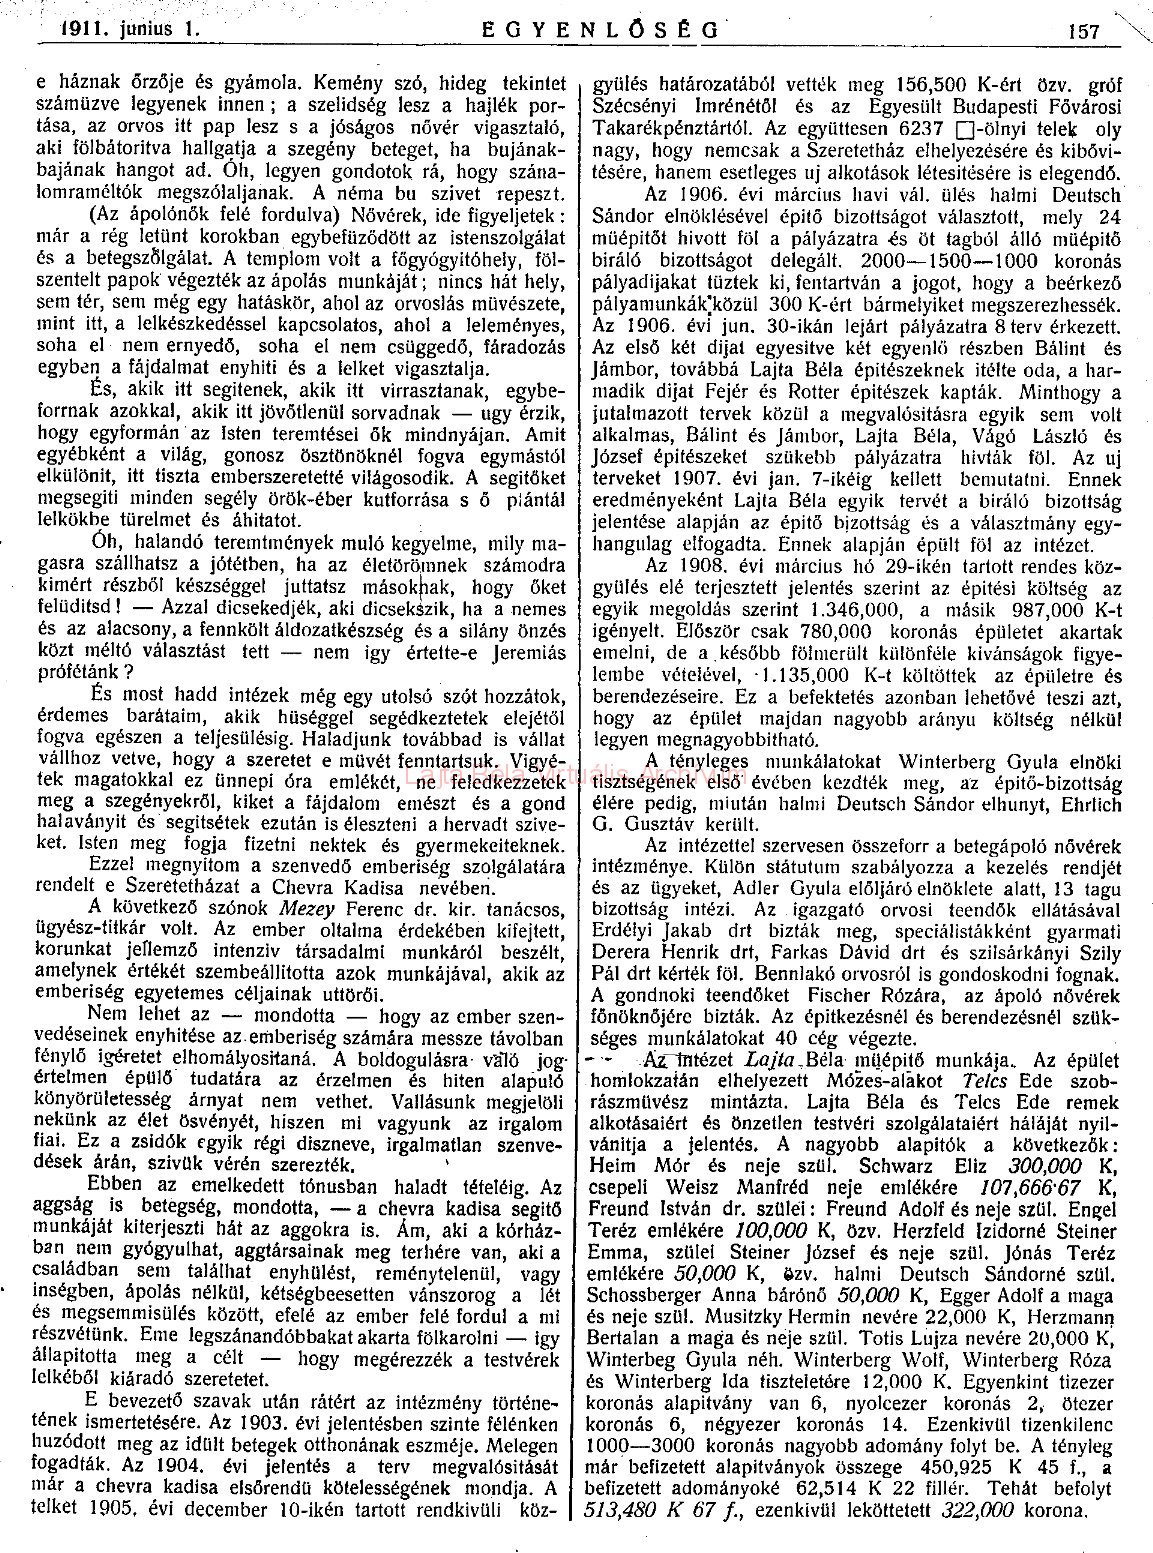 090_Egyenlőség, 1911. VI. 1. 157. p.